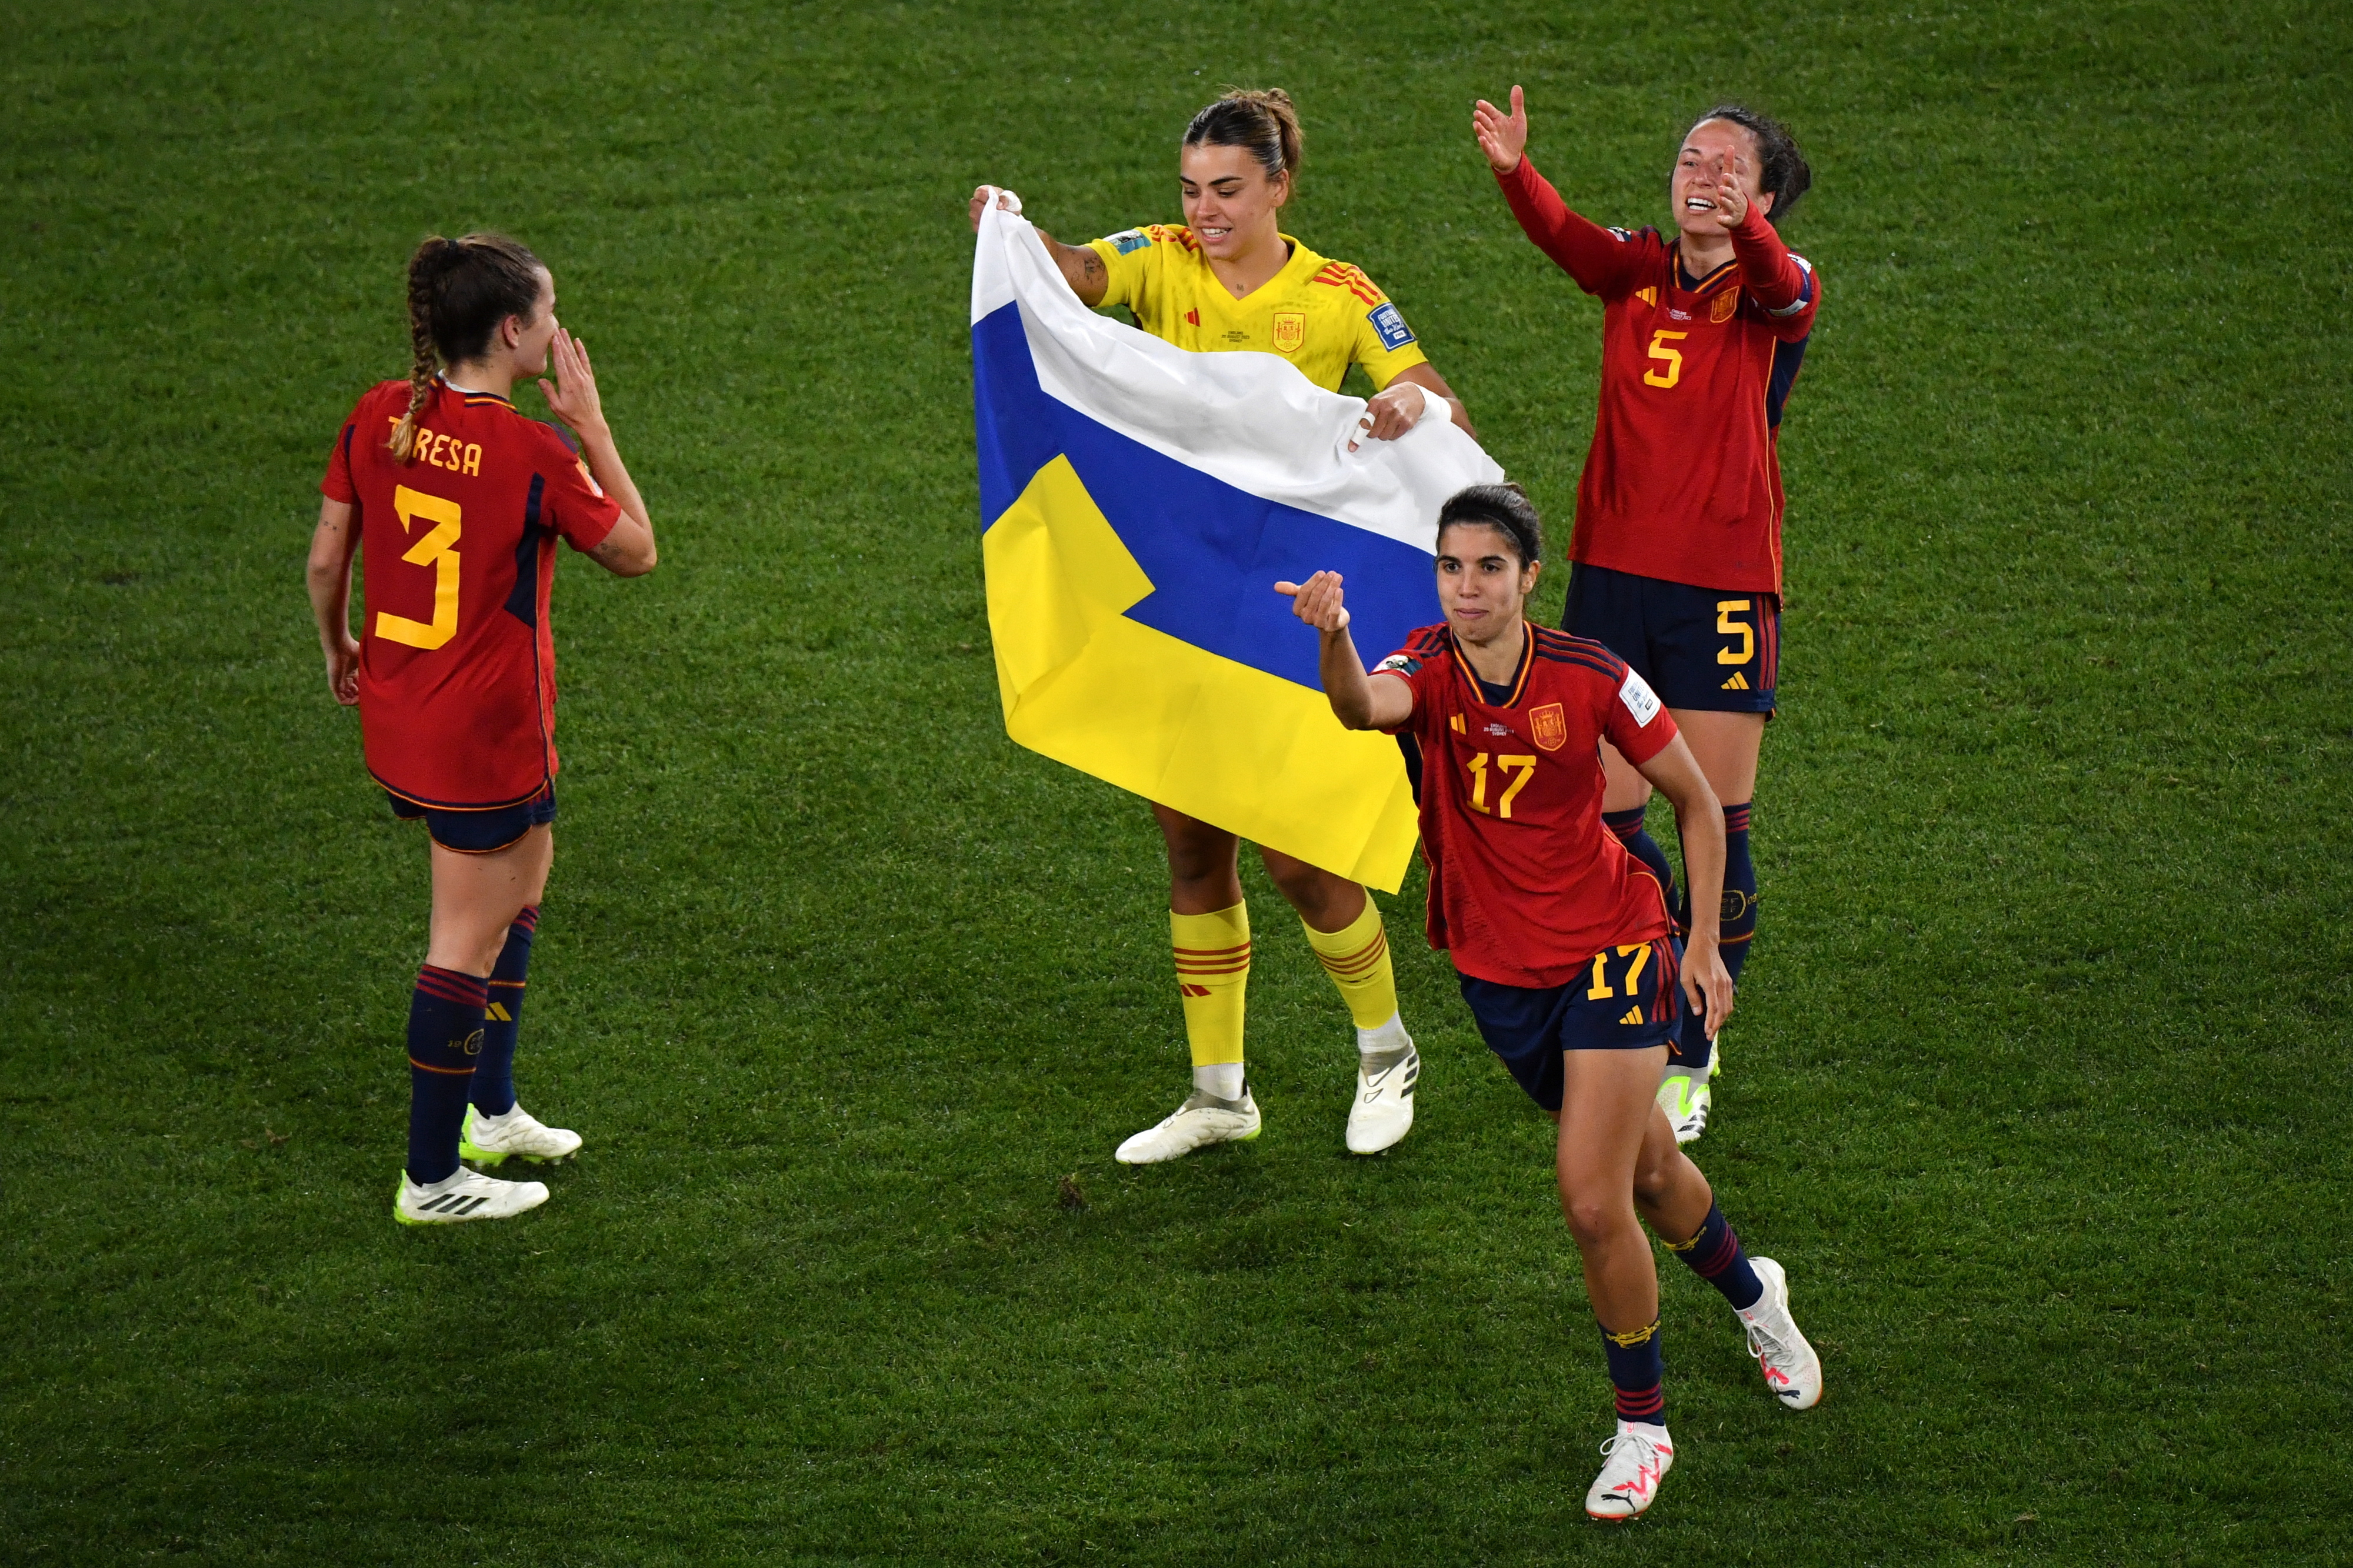 Espanha vence Inglaterra e sagra-se campeã do Mundo feminino de futebol  pela primeira vez - Mundial Futebol Feminino - SAPO Desporto